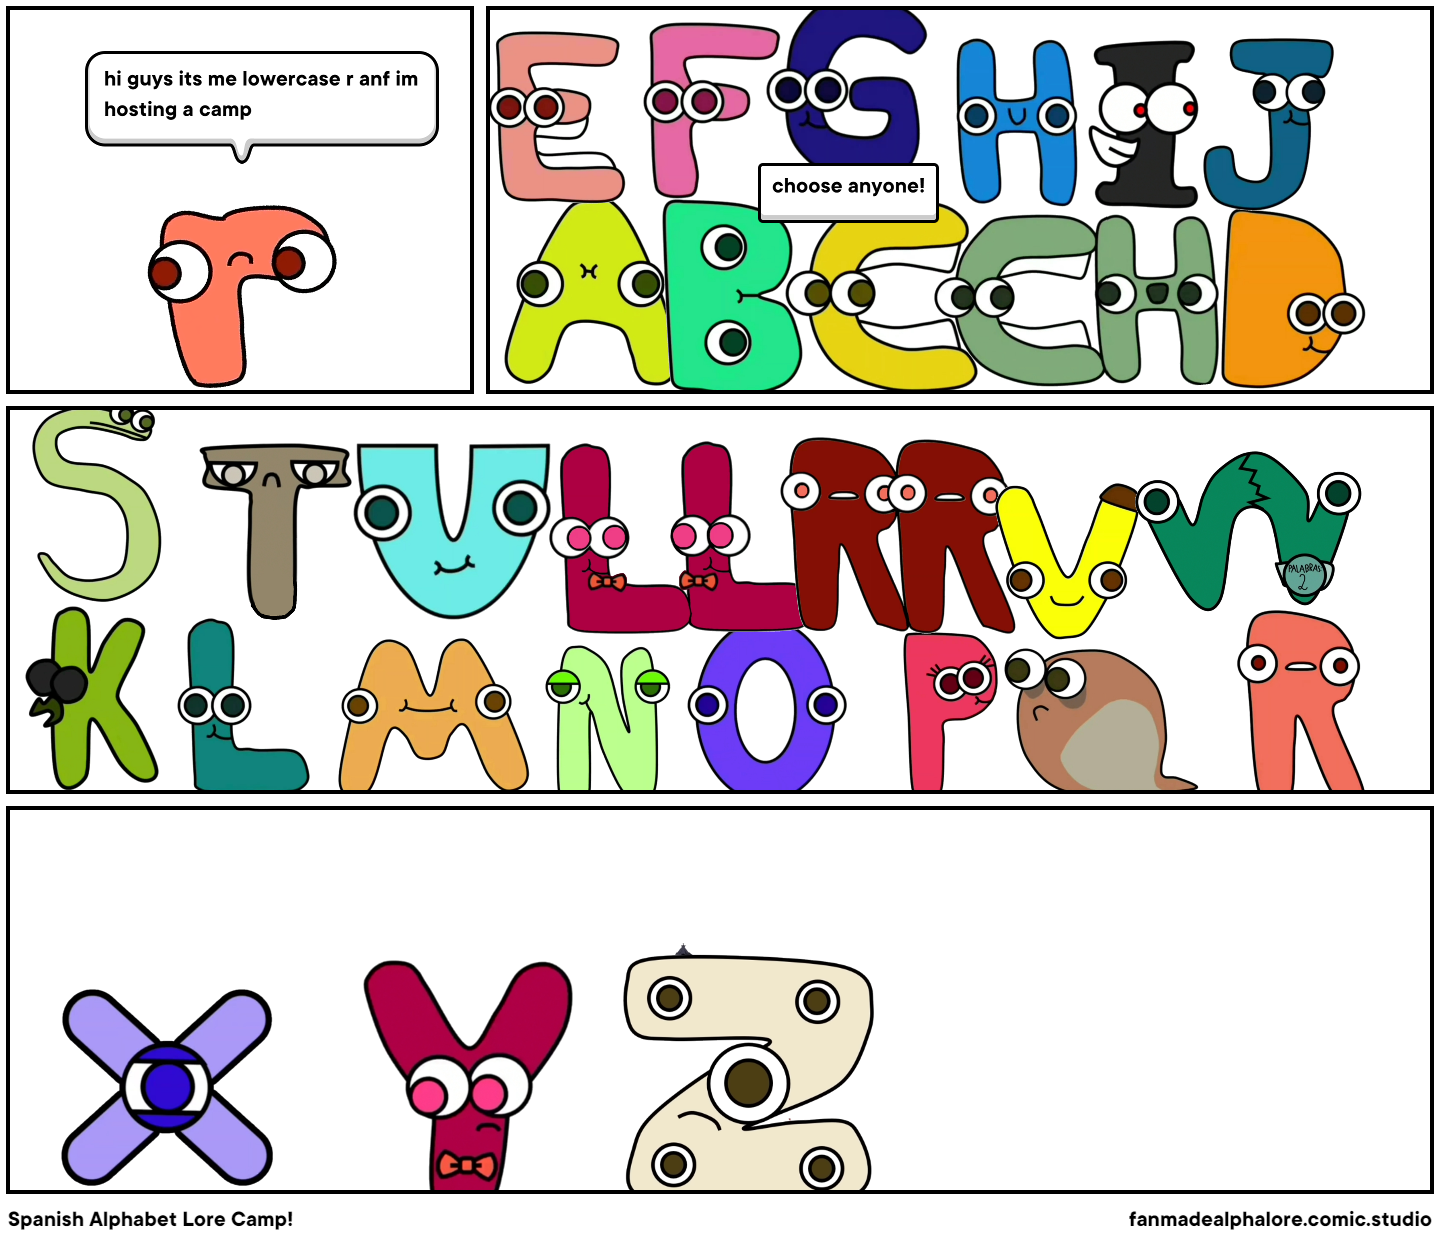 Spanish Alphabet Lore Alternative Page 1-3 : r/alphabetfriends